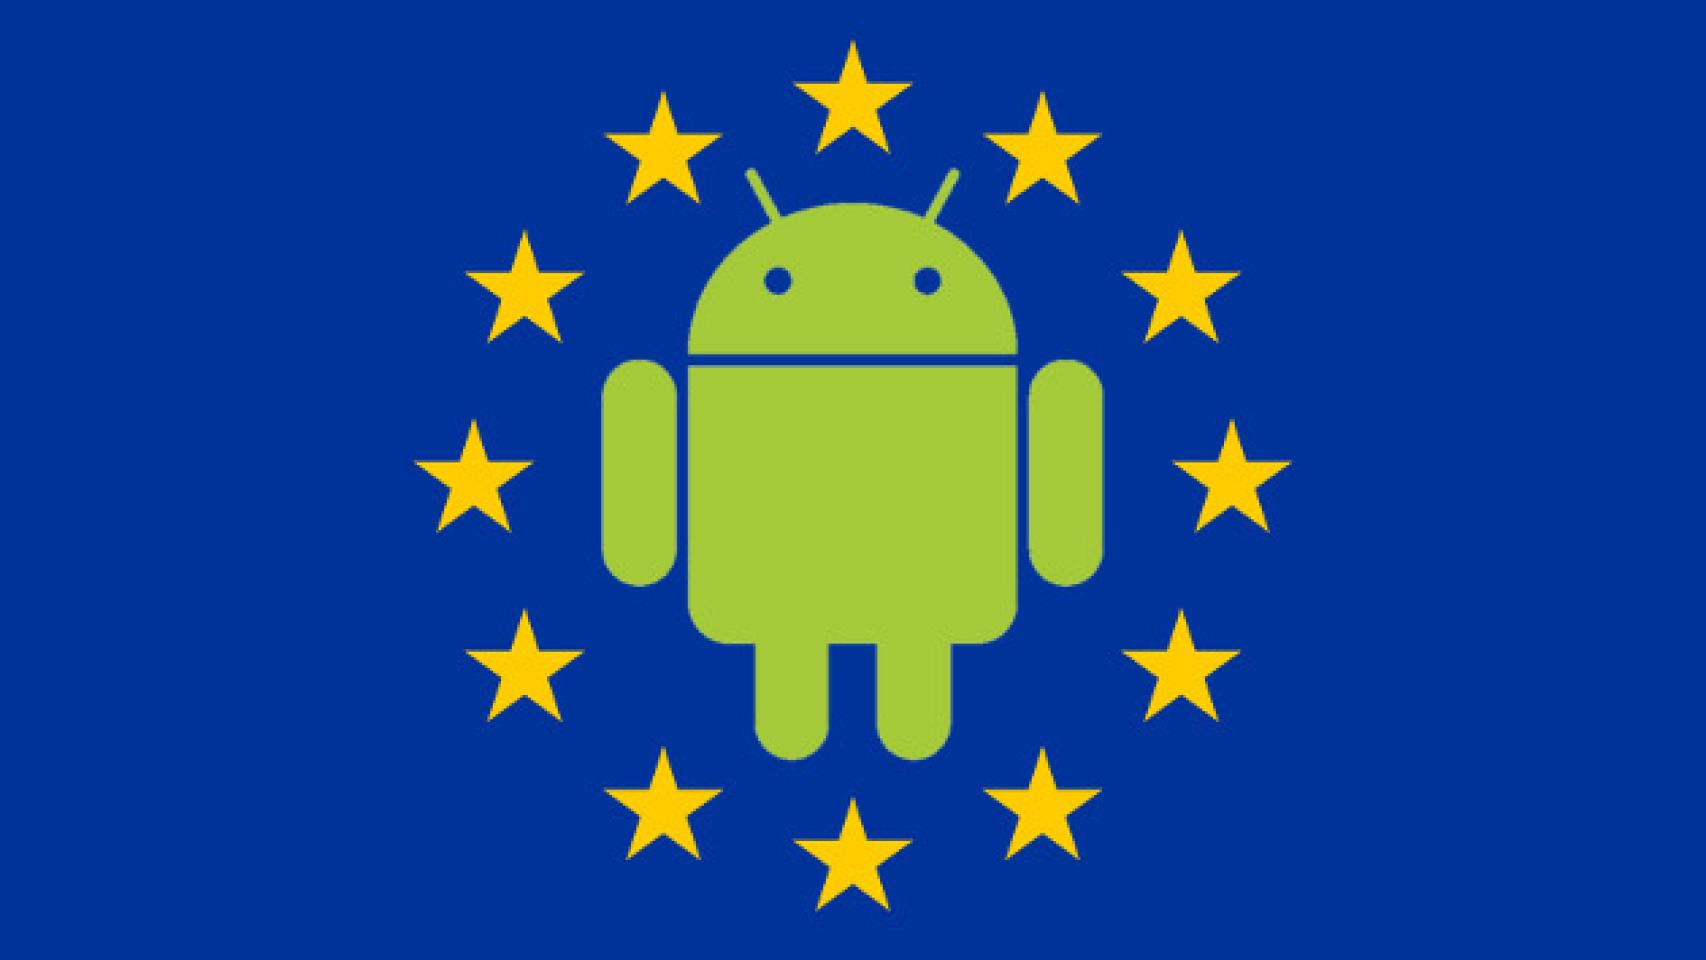 La UE inicia una investigación contra Google por prácticas monopolistas con Android